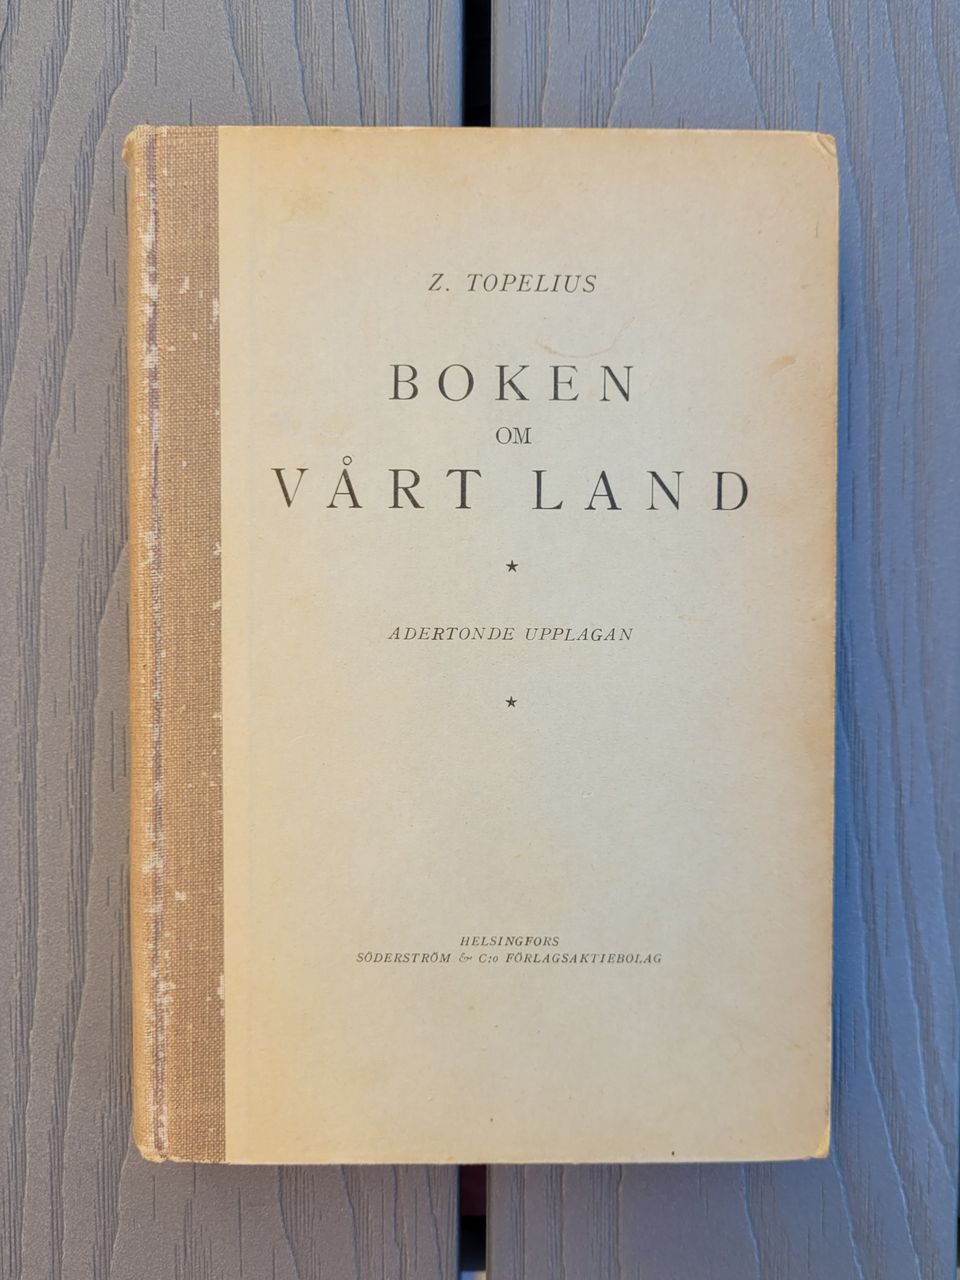 Z. Topelius: Boken om vårt land (1934)